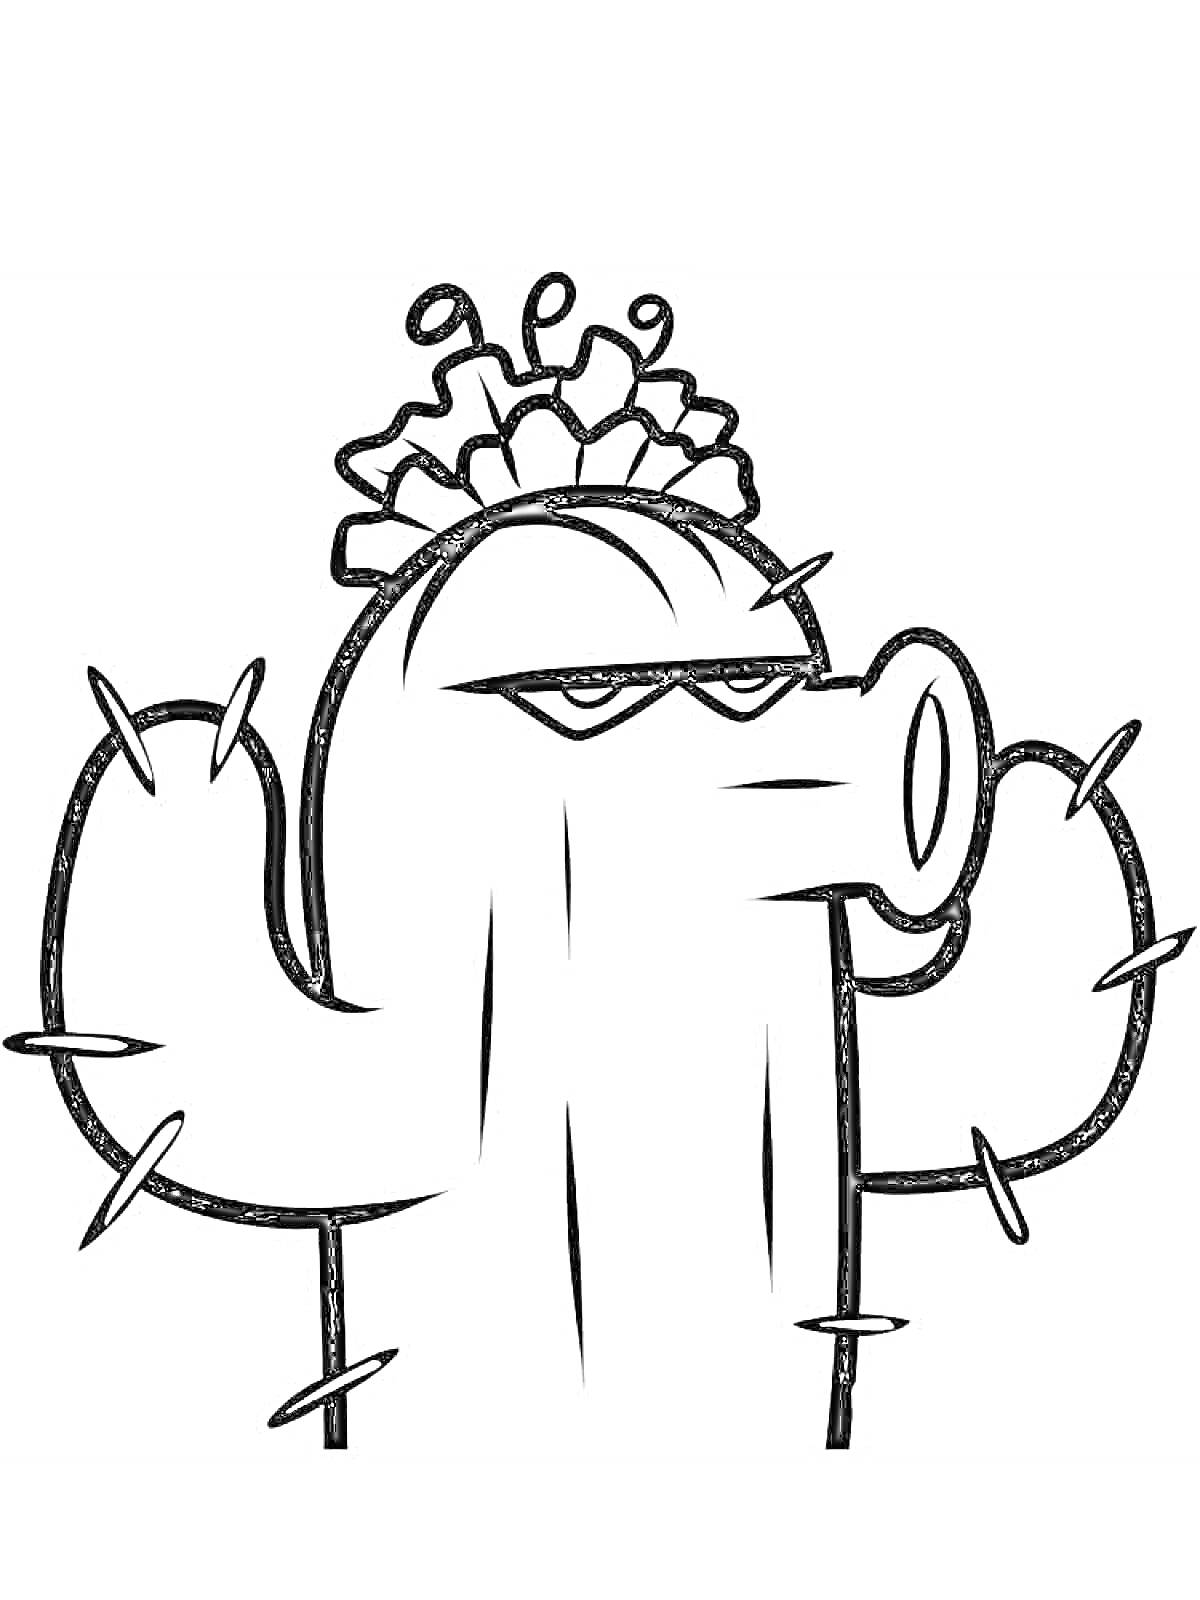 Раскраска Кактус с шипами и цветком на голове, мультяшный стиль